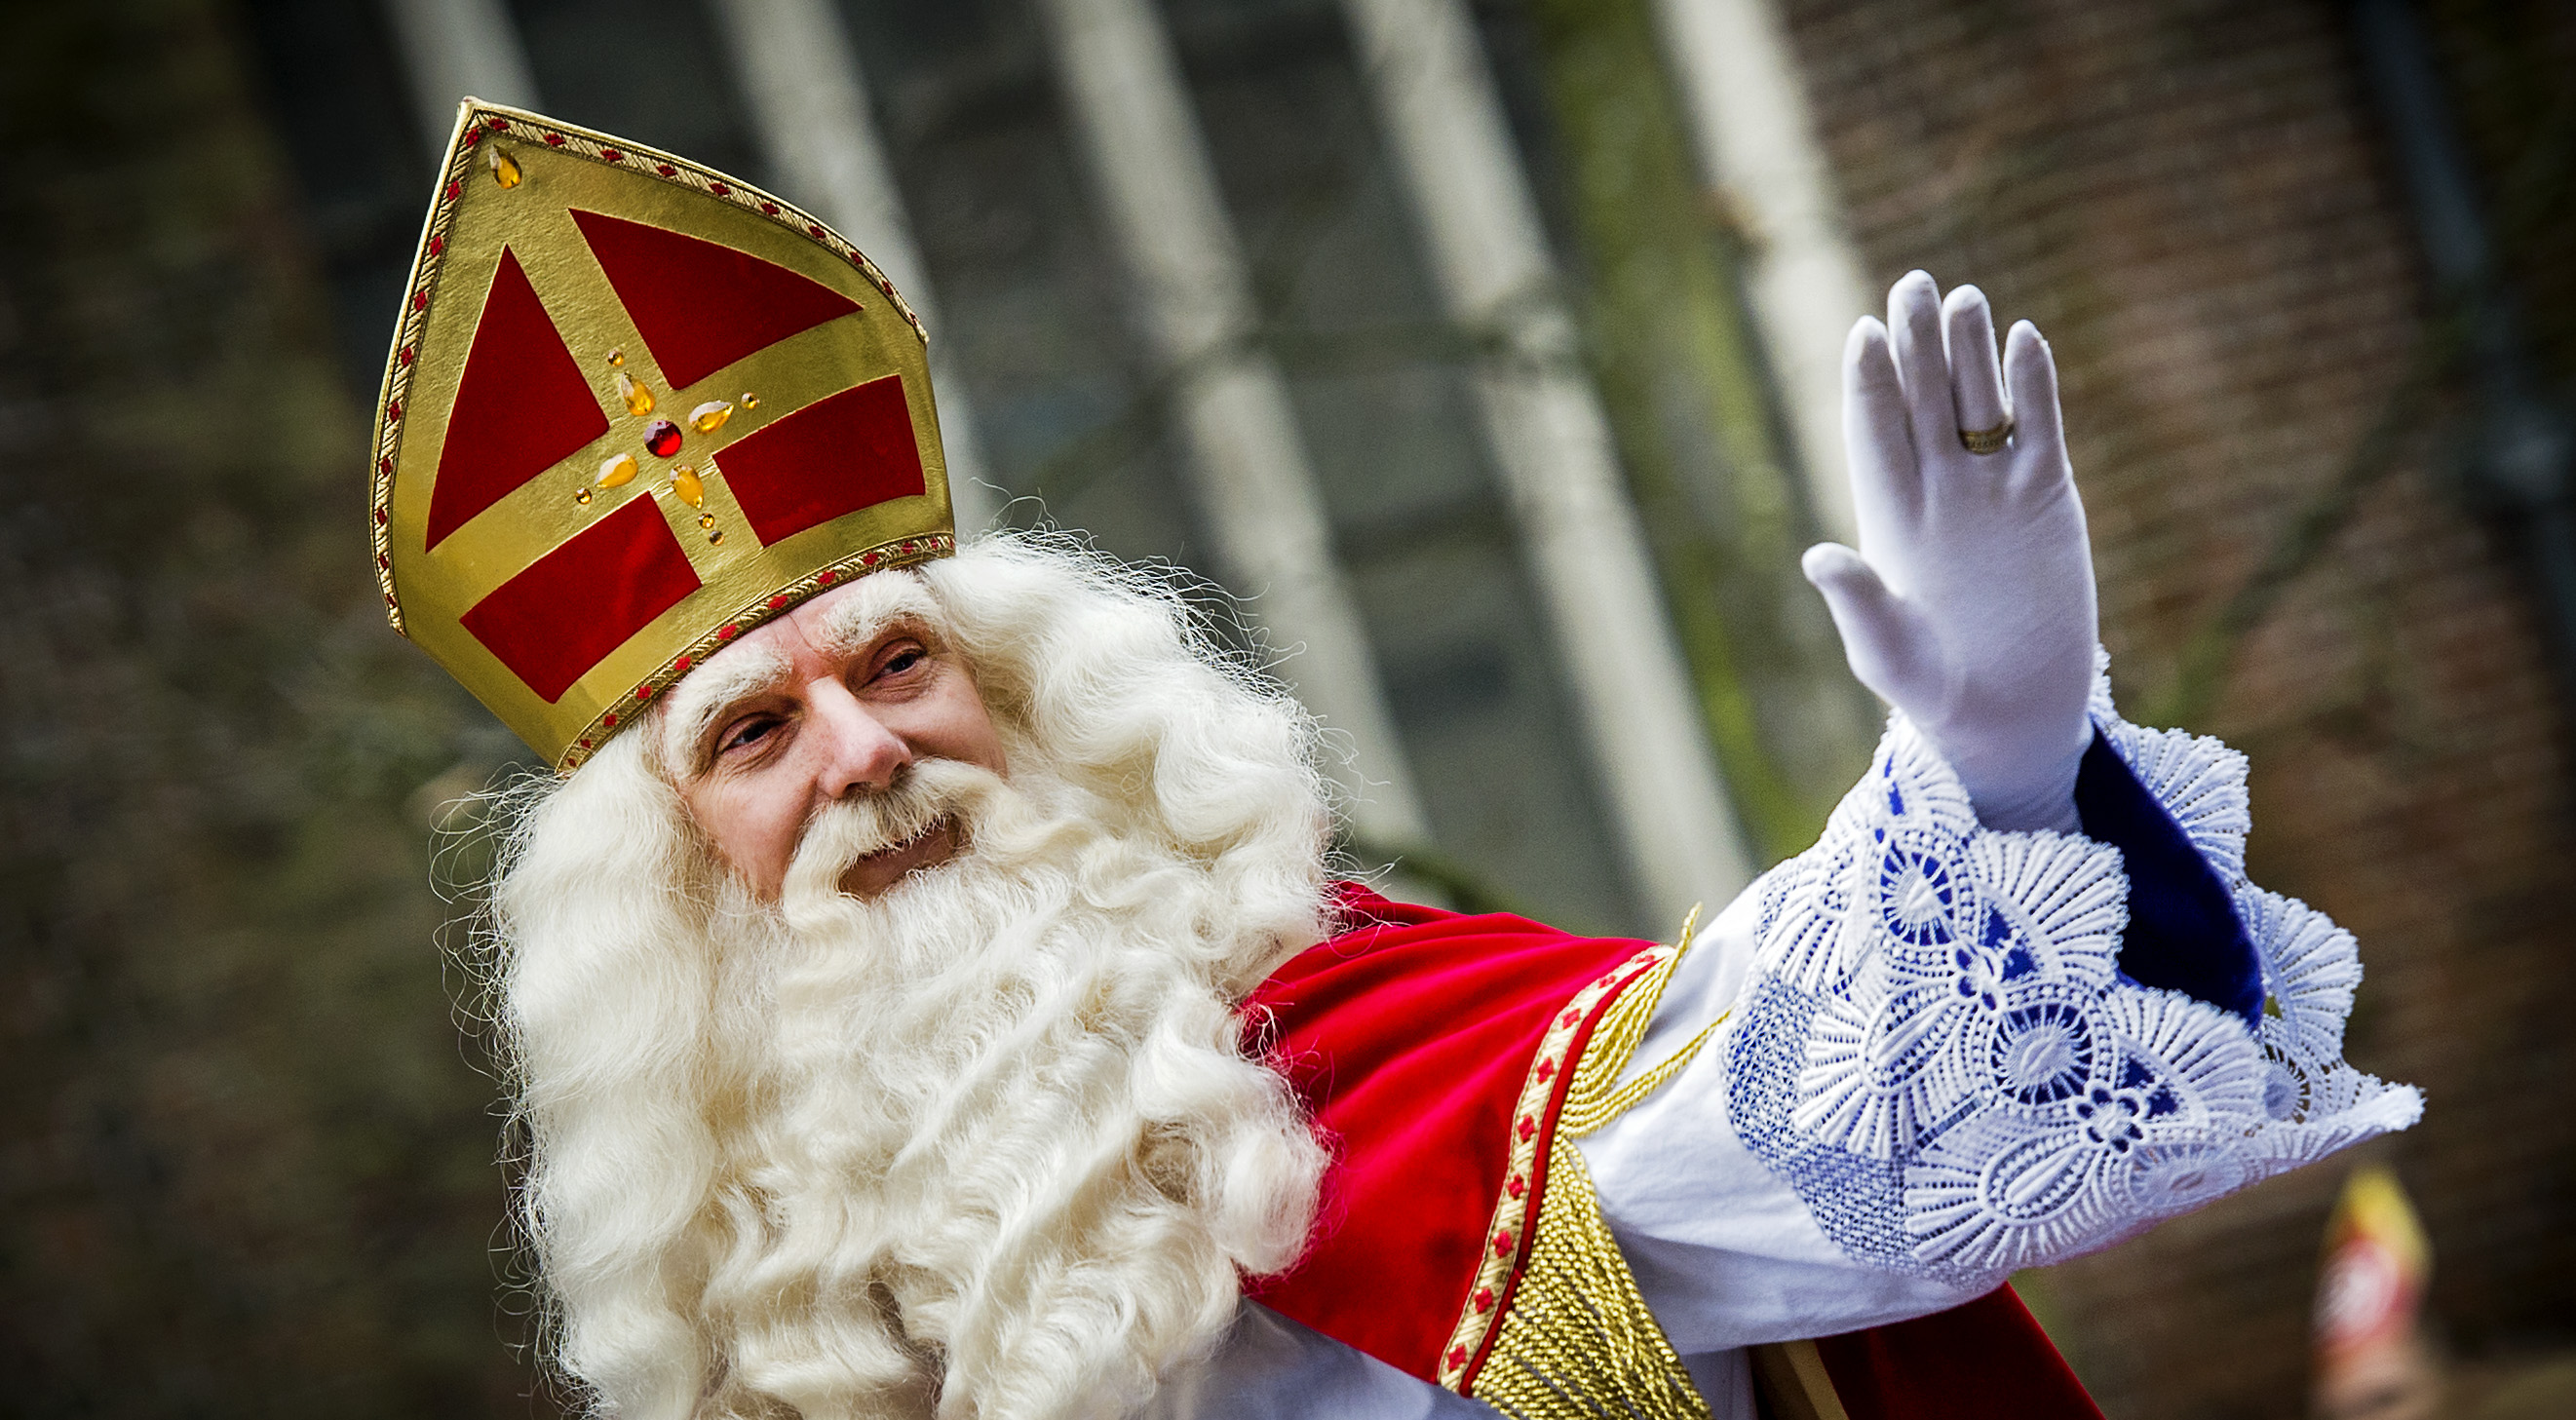 Sinterklaas en Zwarte Piet zijn weer in het land. Maar of Nederlanders, nu het land uit de recessie is, meer of minder aan cadeautjes zullen uitgeven, blijkt lastig te voorspellen. Volgens onderzoeksbureau Q&A wint de sint aan sympathie en lijkt het erop dat de bestedingen zo’n 4,6 procent zullen stijgen ten opzichte van vorig jaar. Een kleine meerderheid van de 1800 door Q&A ondervraagde consumenten gaf aan het feest te vieren, iets meer dan vorig jaar.